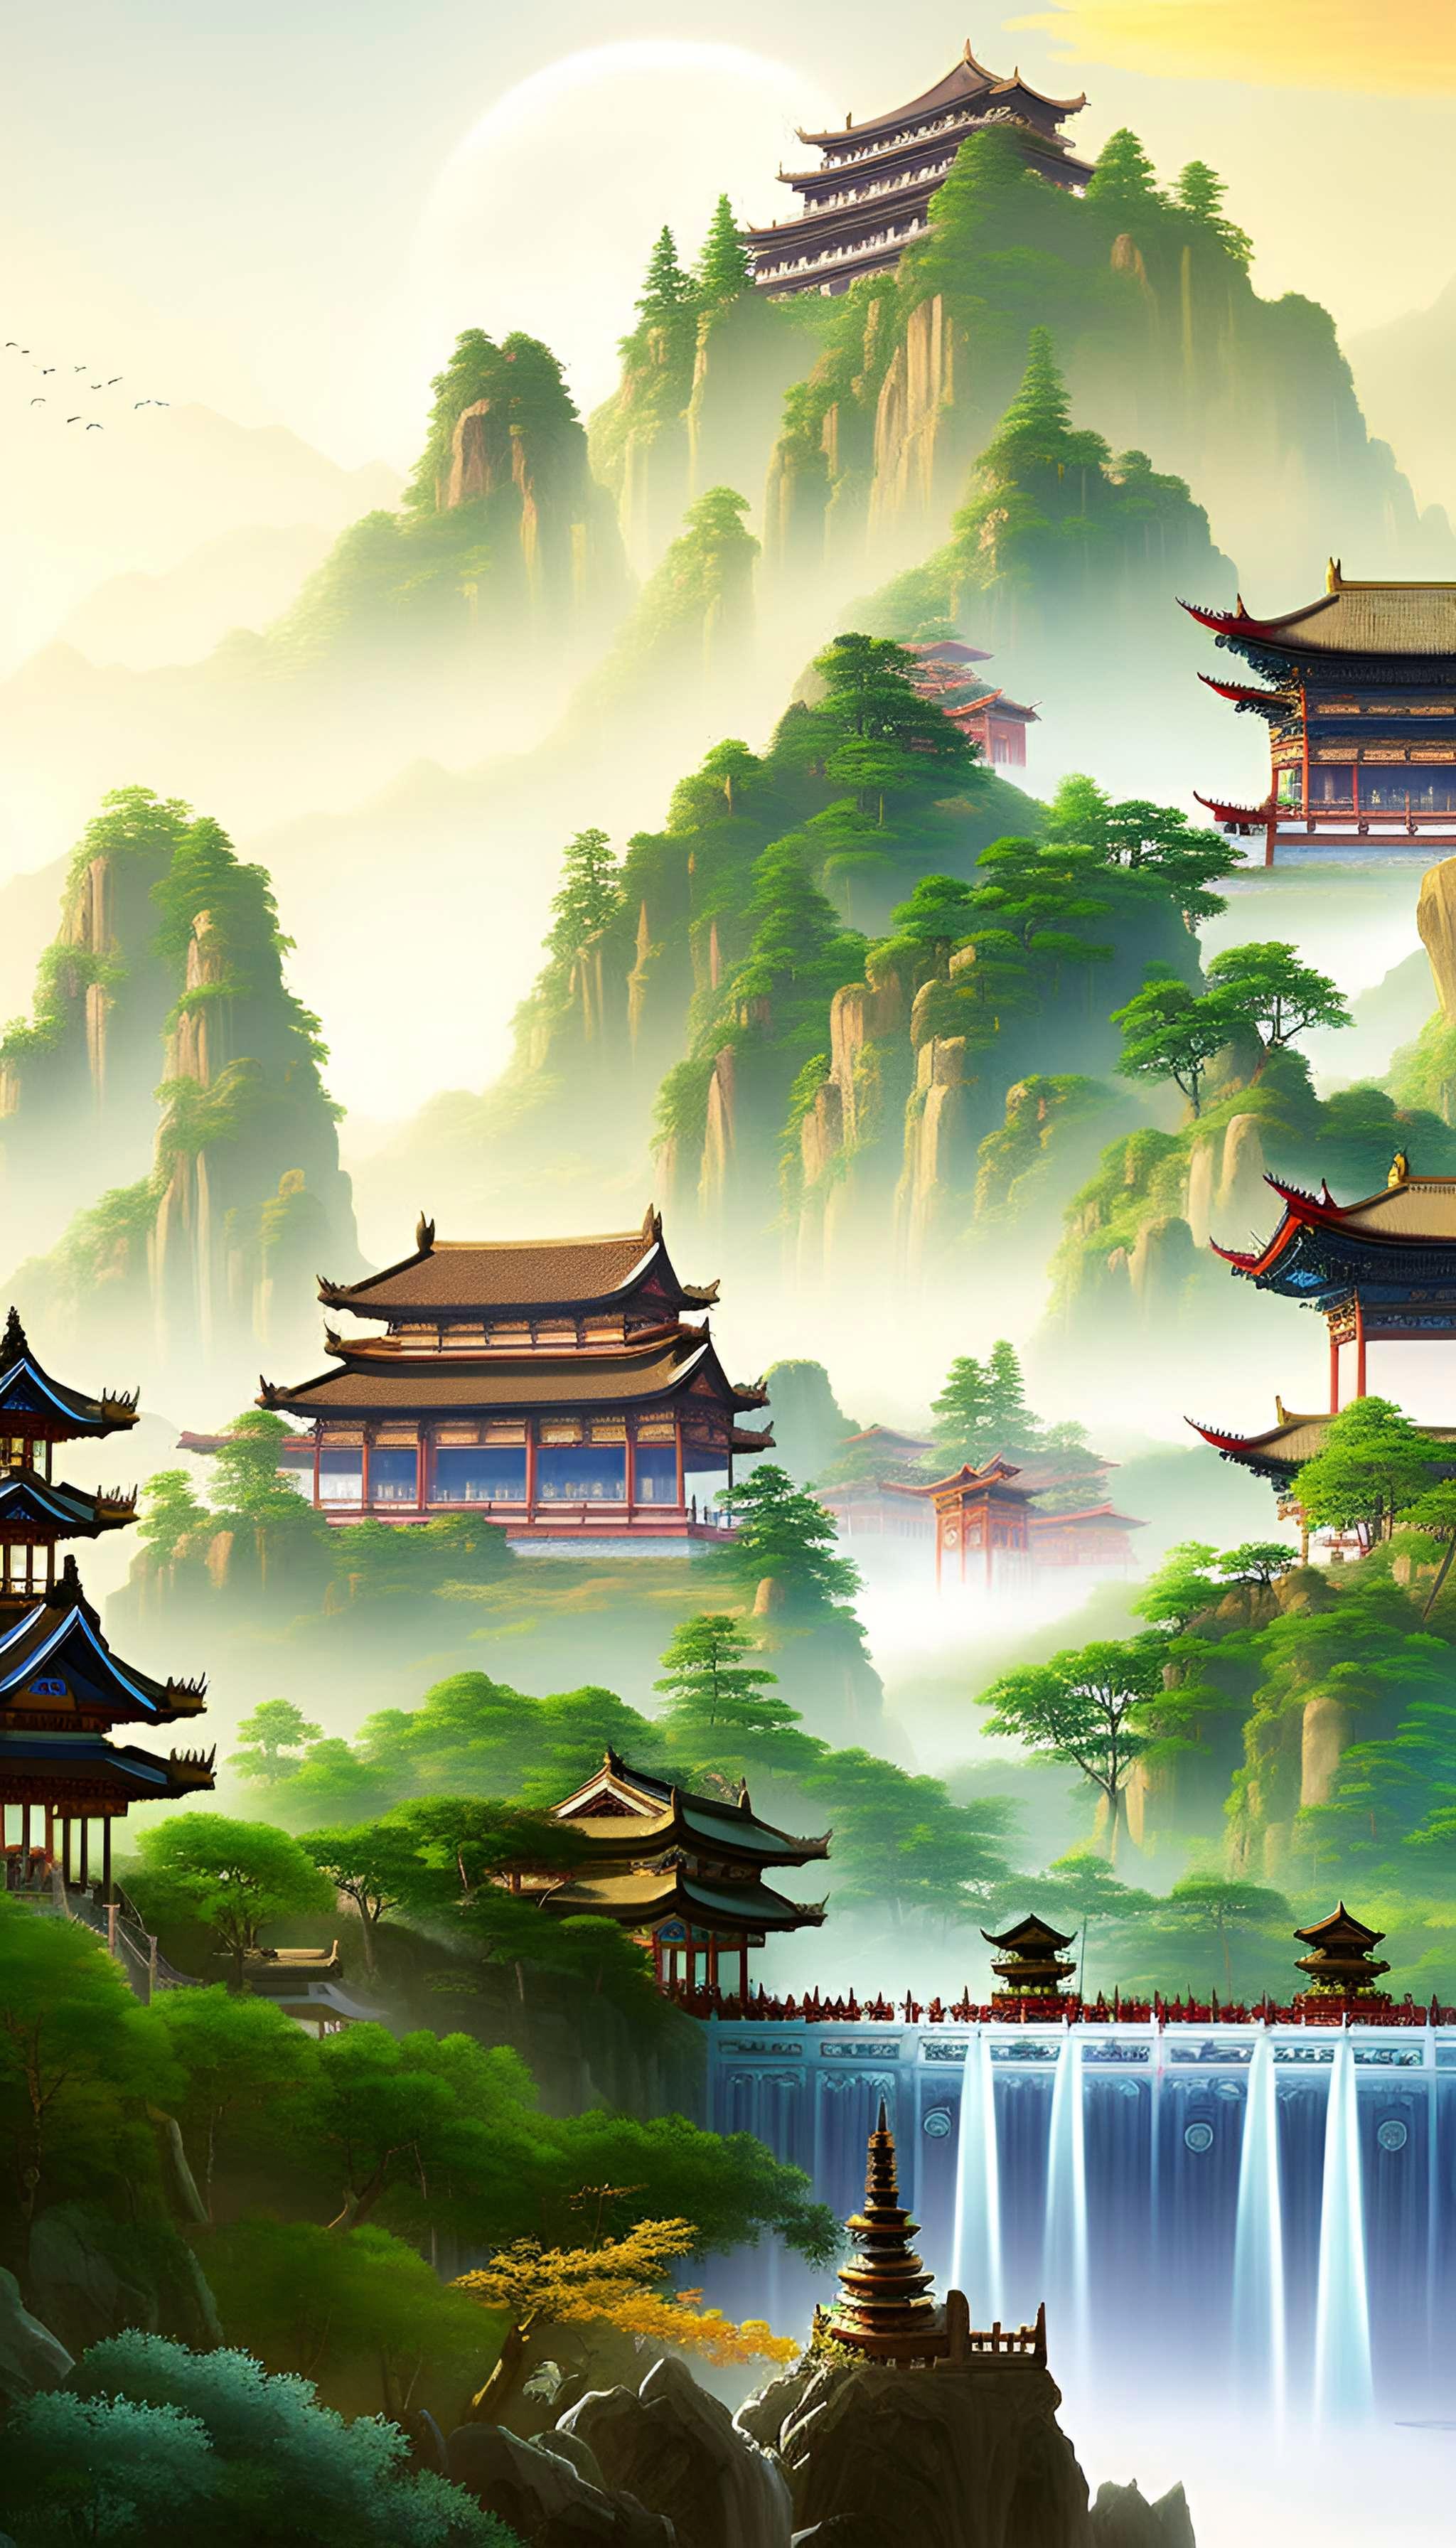 青山隐古寺——古典式中国山水画